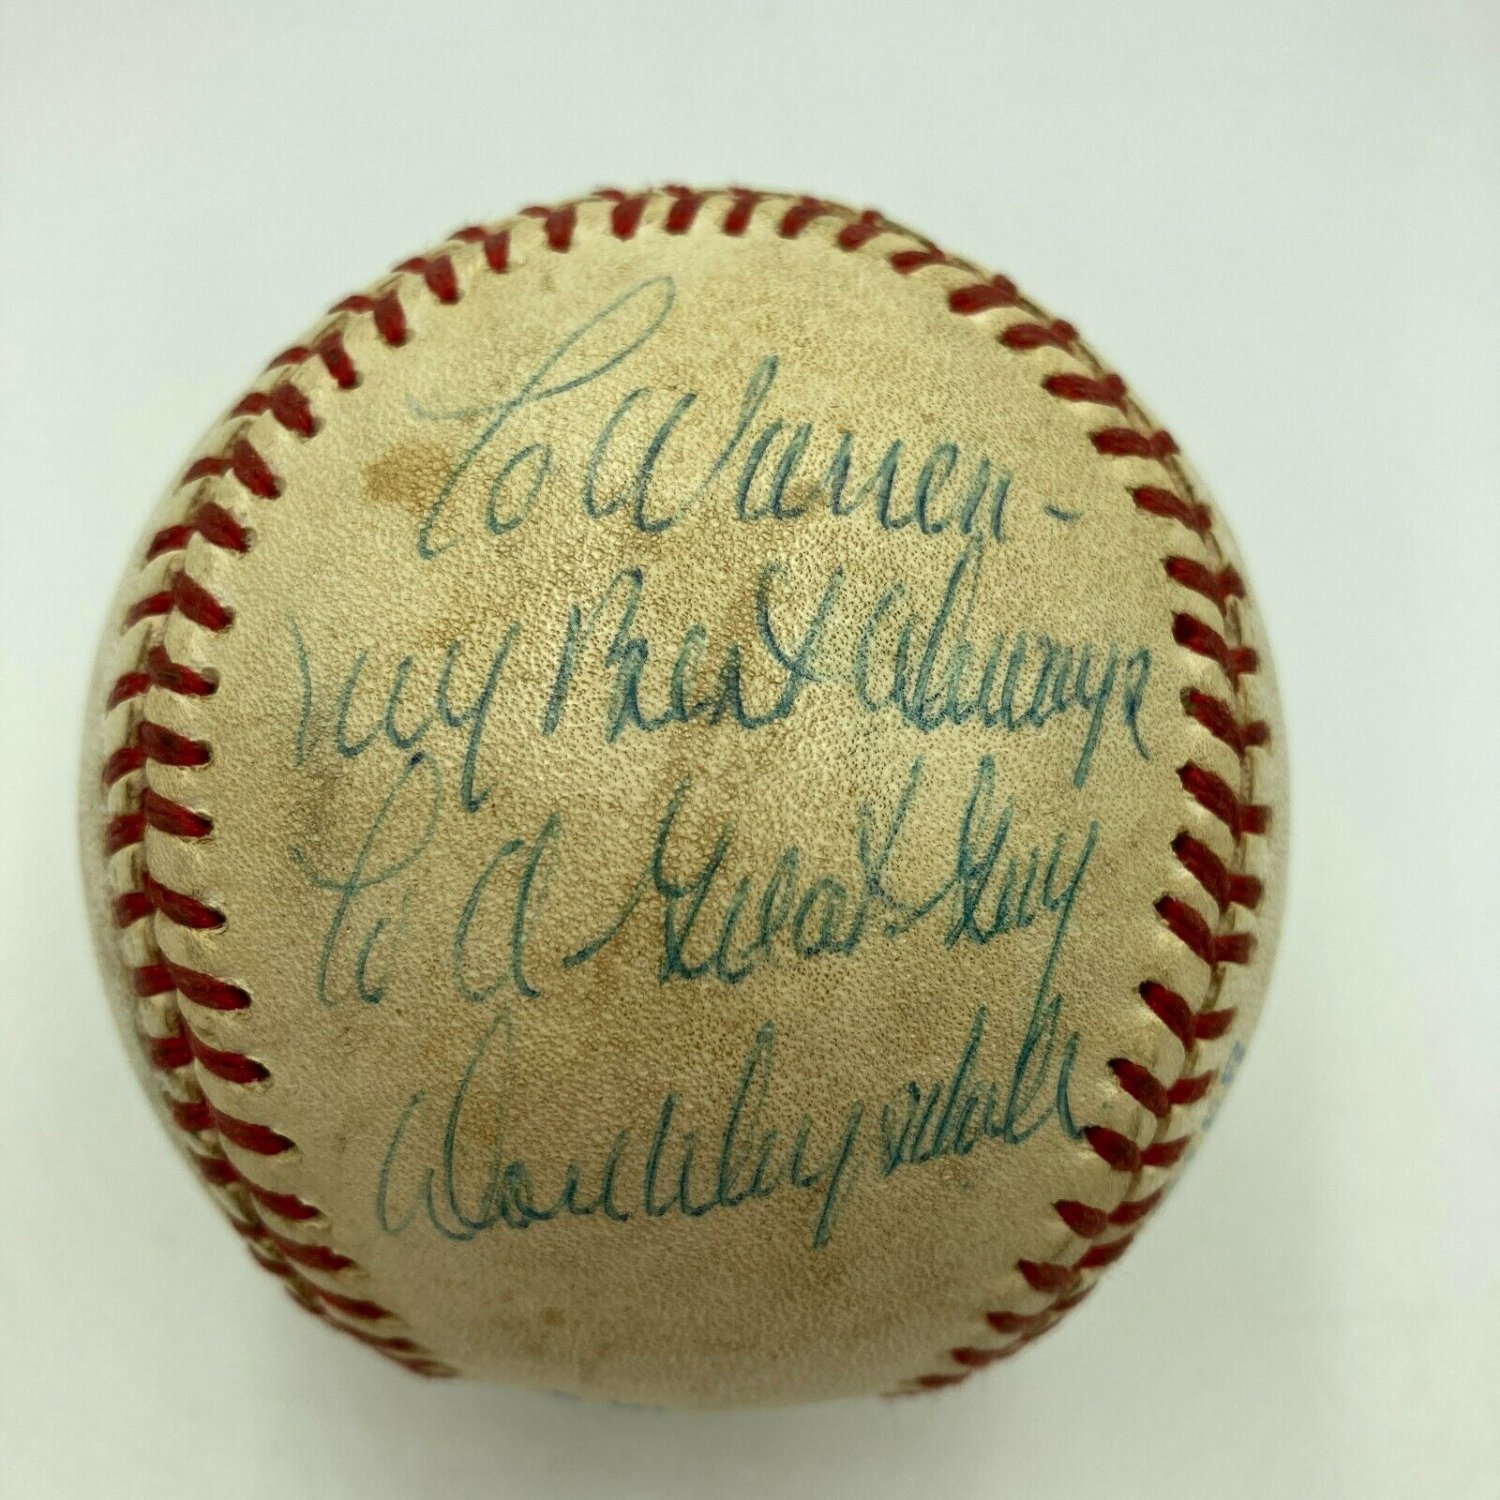 Don Drysdale Signed Baseball, Autographed Don Drysdale Baseball